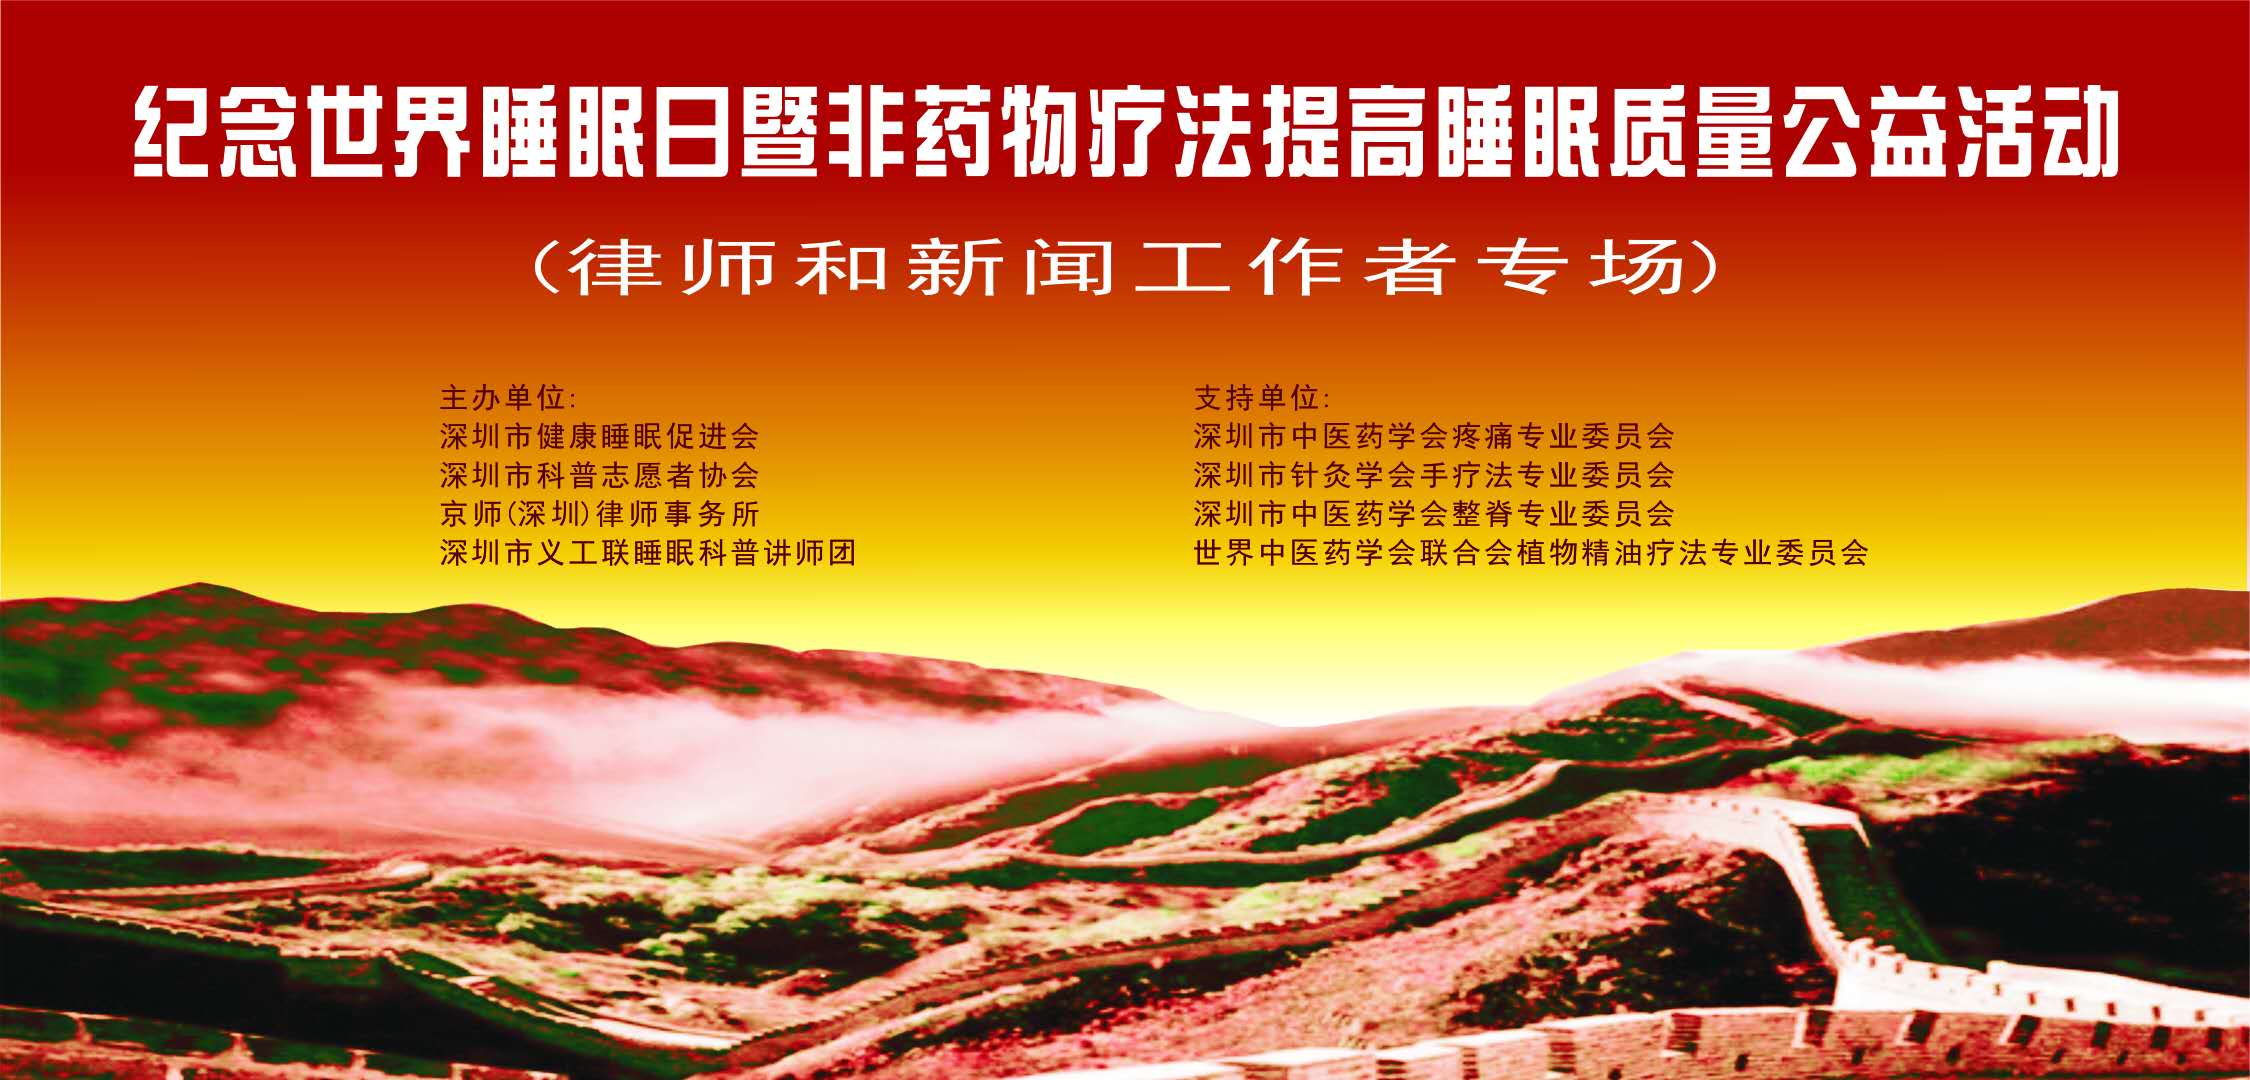 纪念世界睡眠日暨非药物疗法与睡眠科普公益活动在深圳举行(图1)